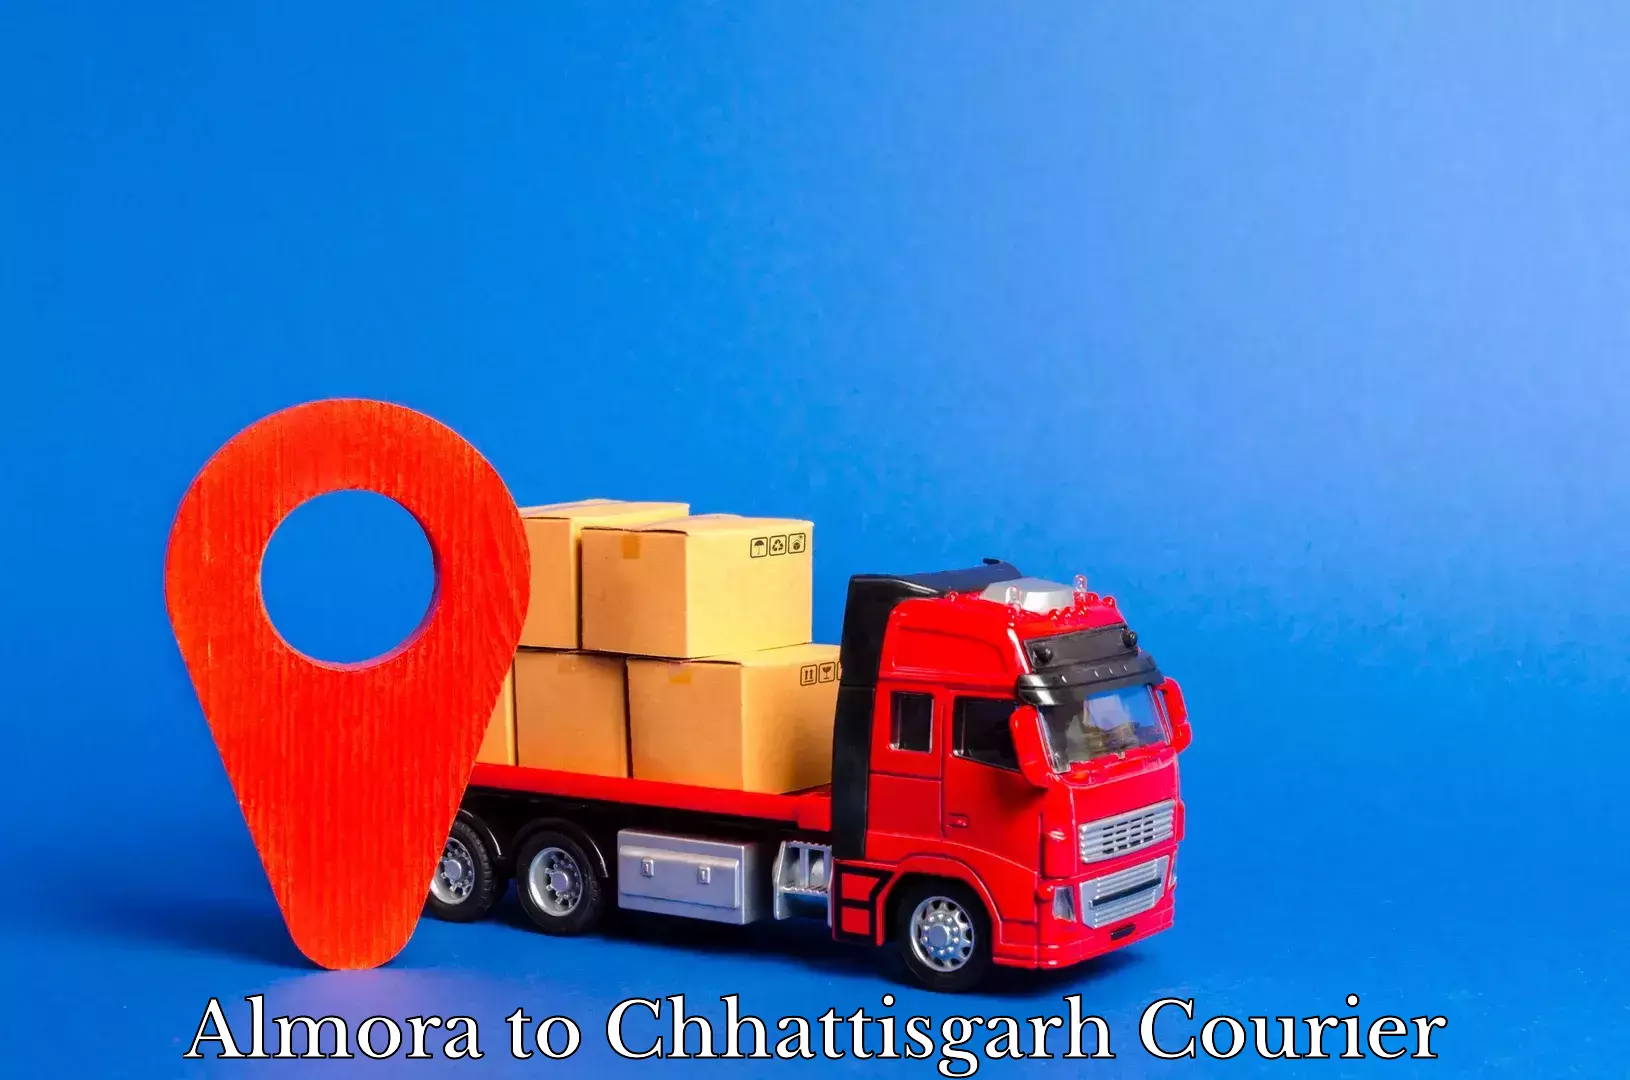 Express delivery capabilities Almora to Chhattisgarh